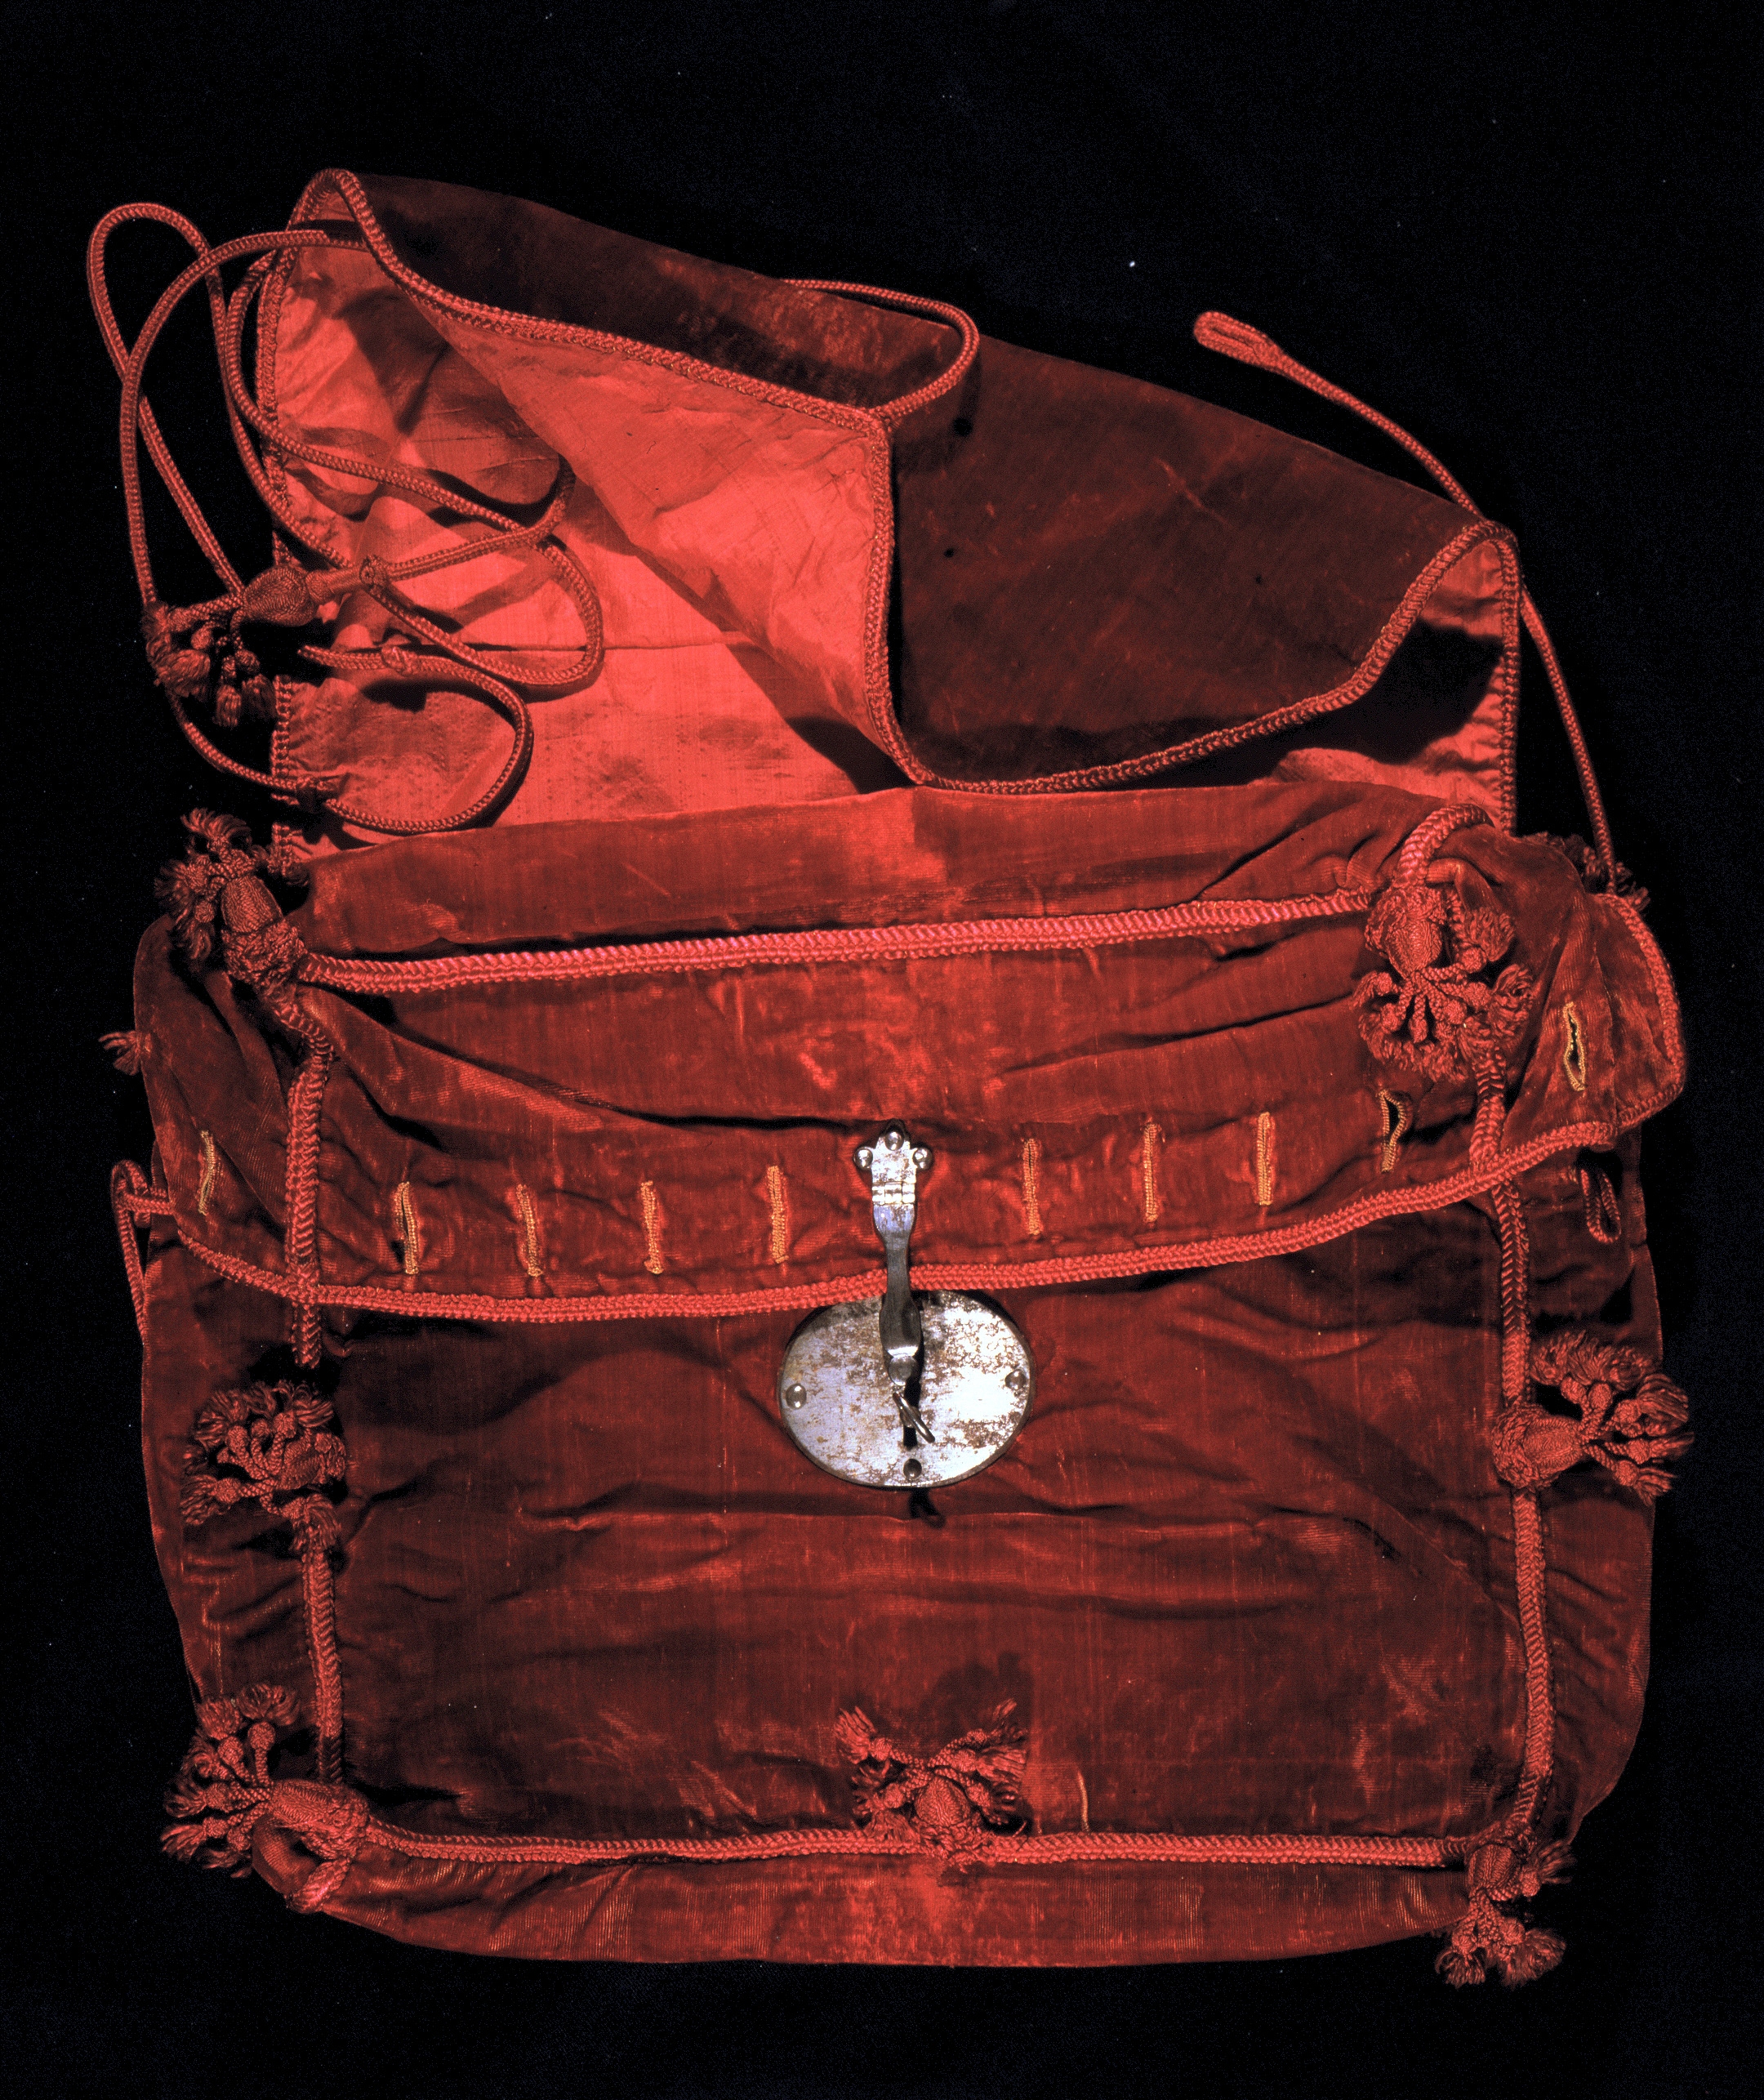 Cartera de terciopelo rojo con cordones de seda roja y borlas que penden de las esquinas, con cerradura de metal plateado, probablemente utilizada para transportar la Constitución de Cádiz de 1812 (390 x 330 x 95 mm.)